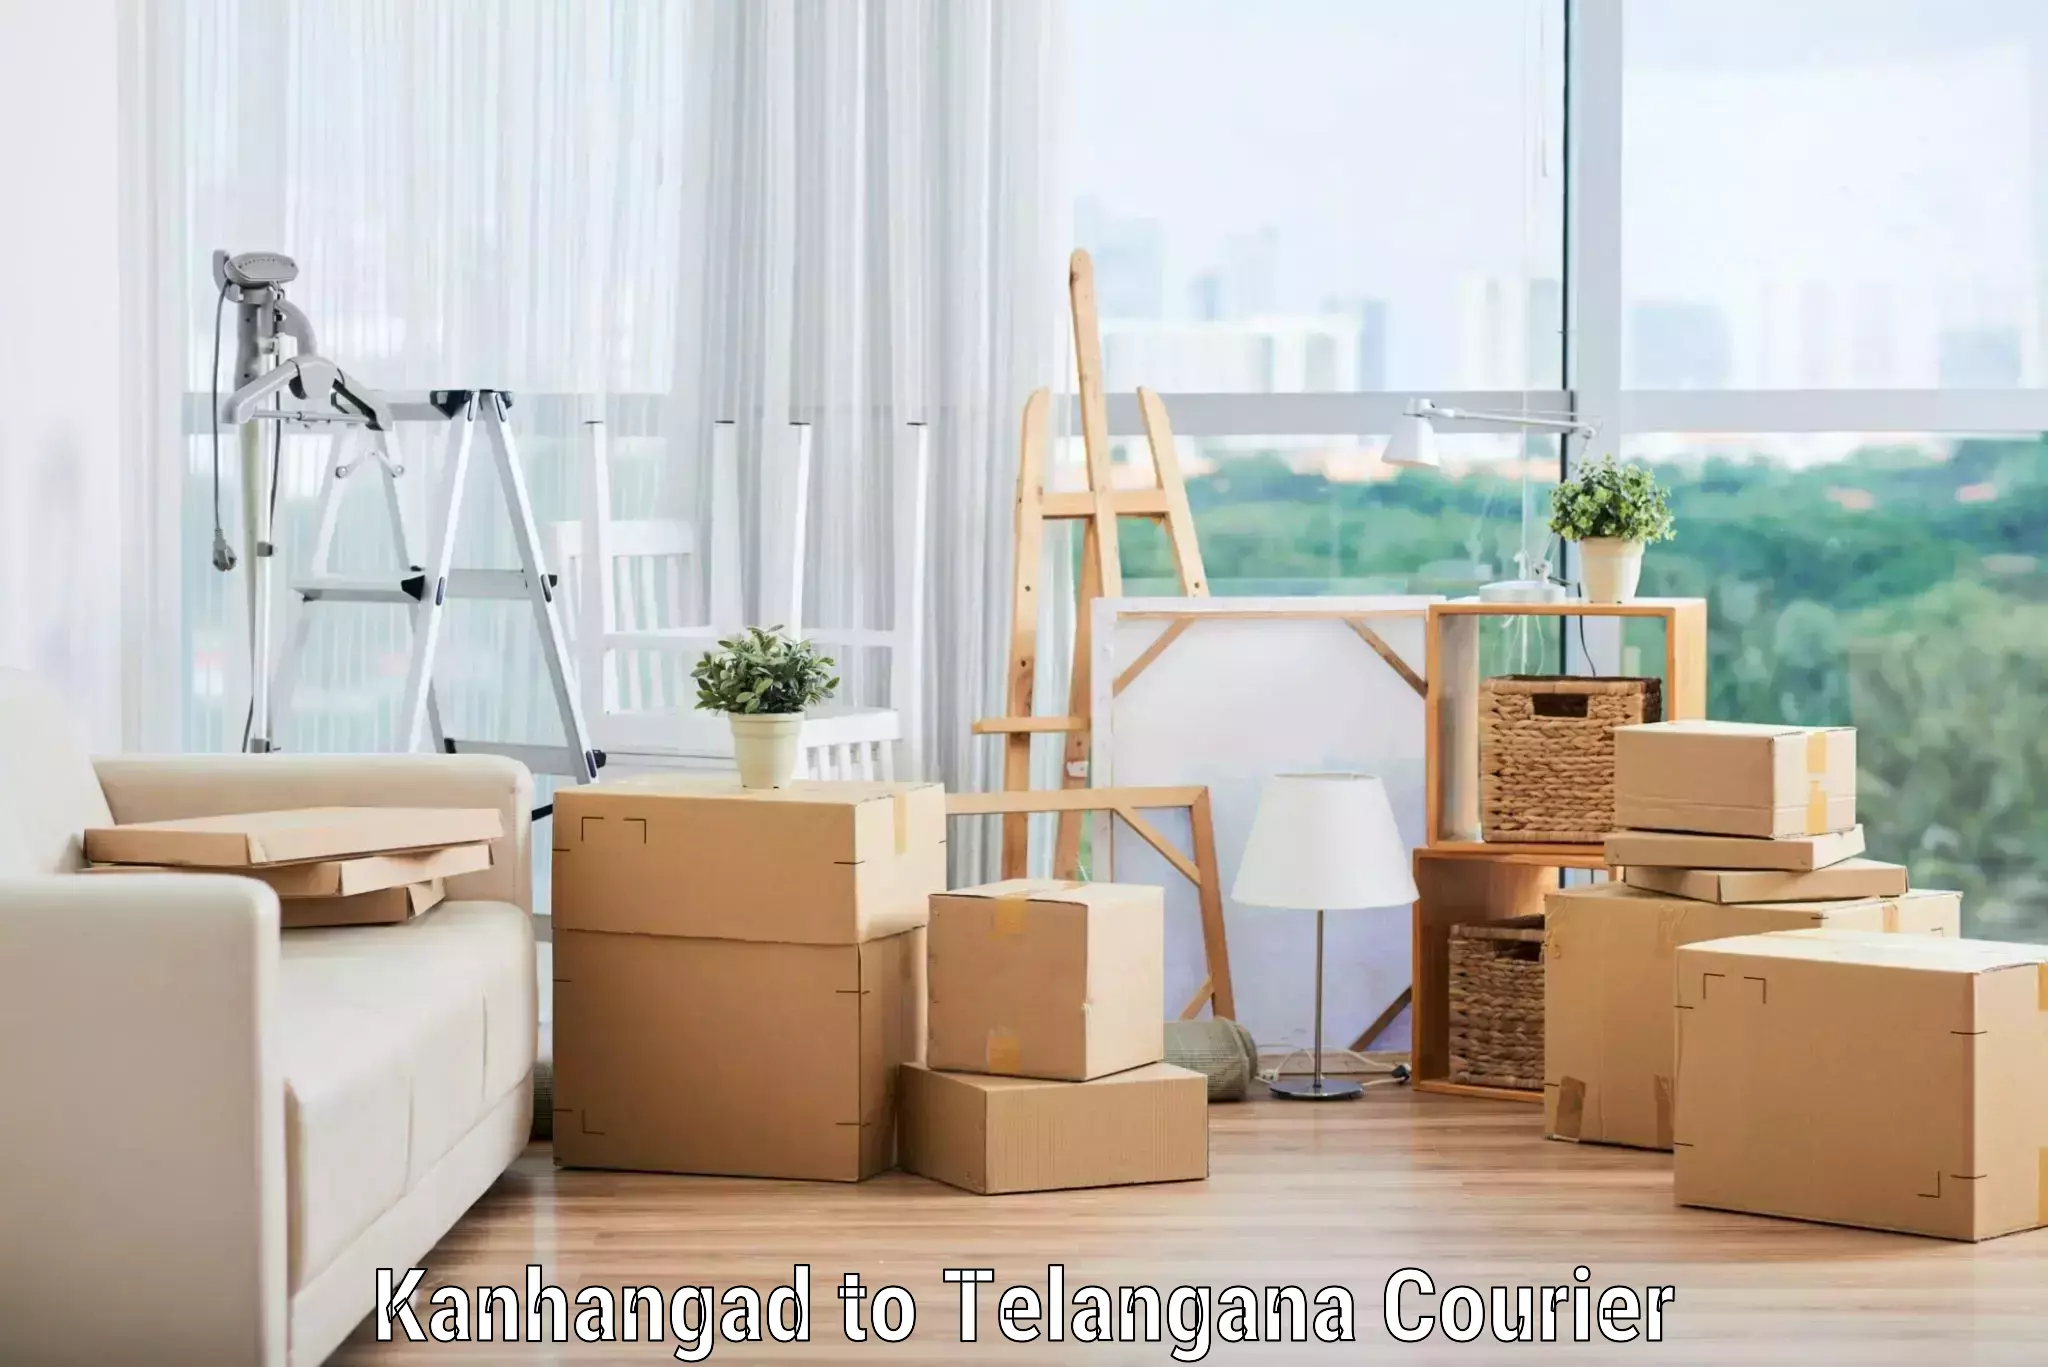 Skilled furniture transport Kanhangad to Telangana